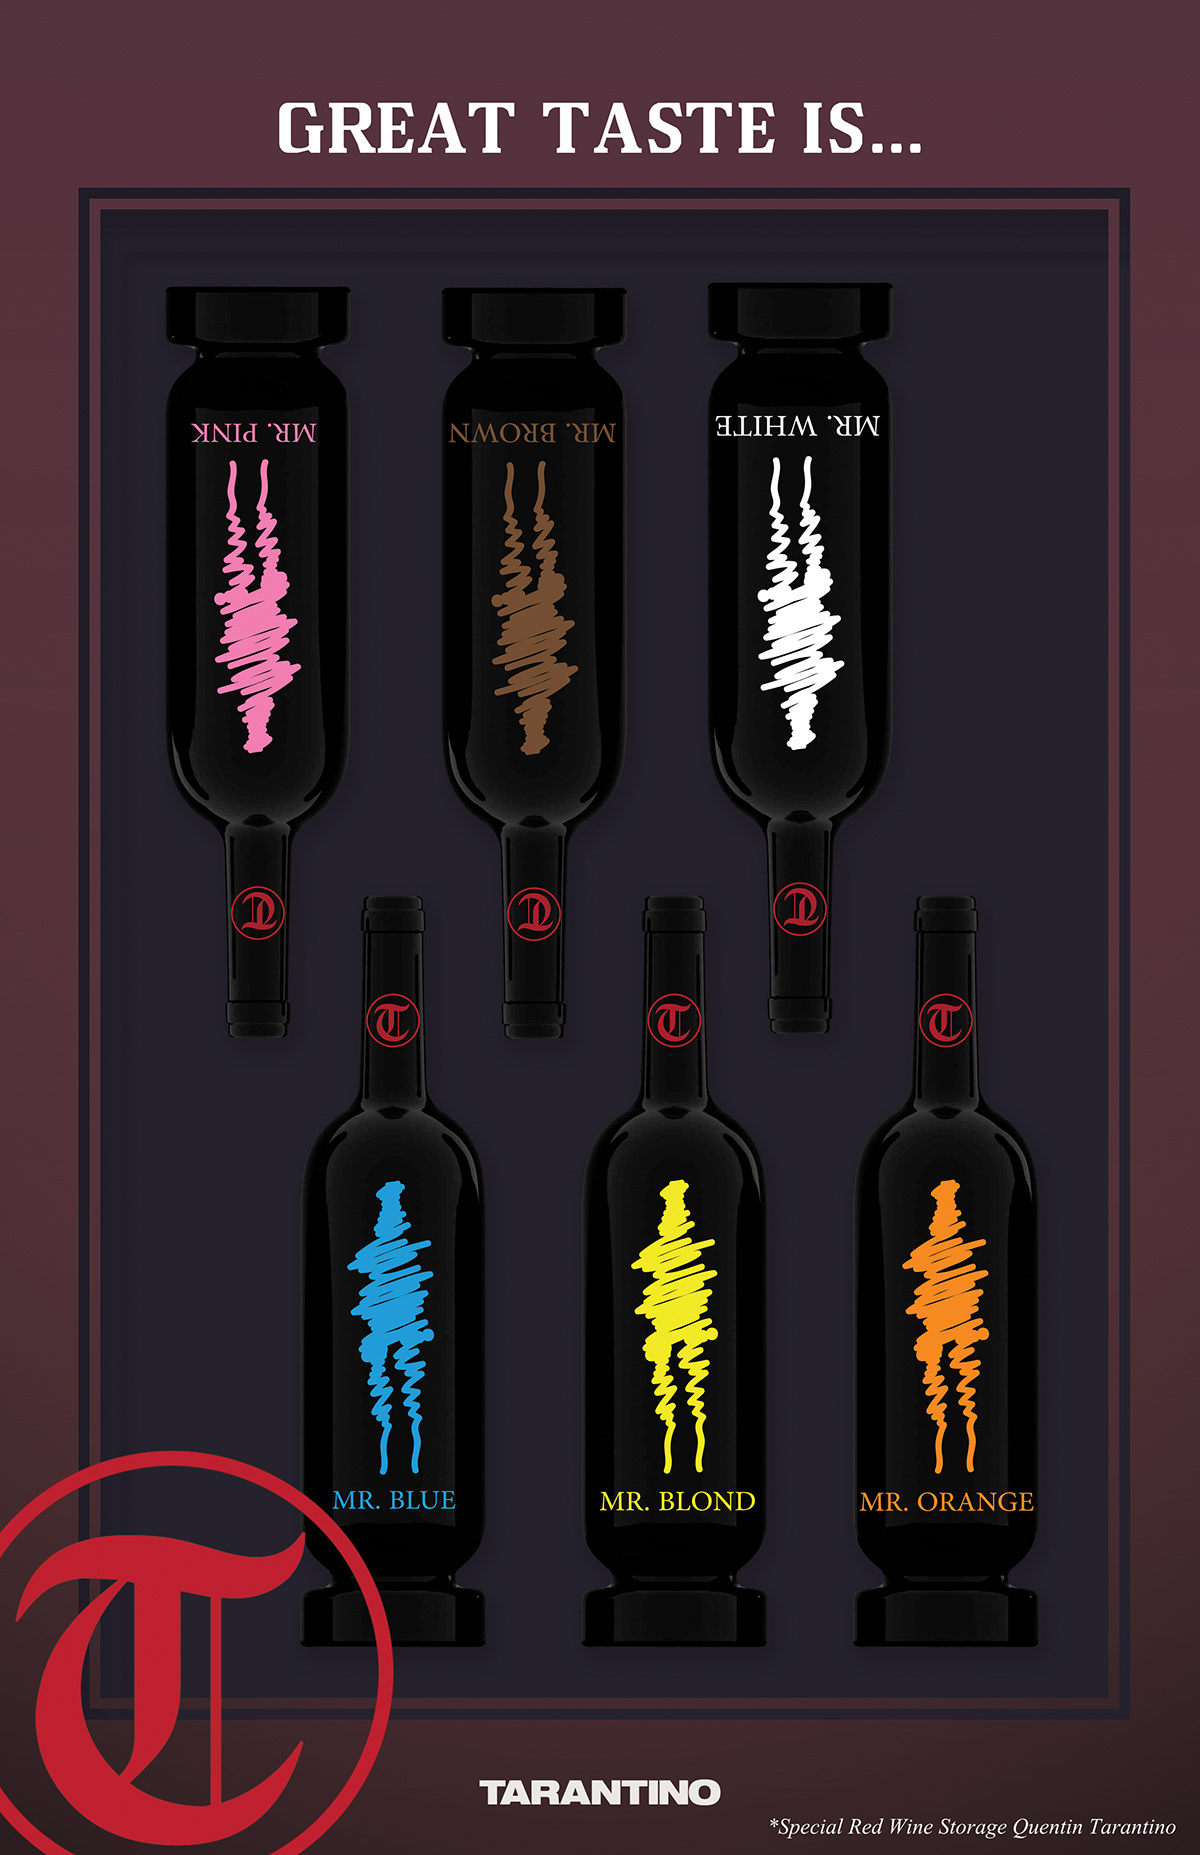 Tarantino wine product graphic richi6006